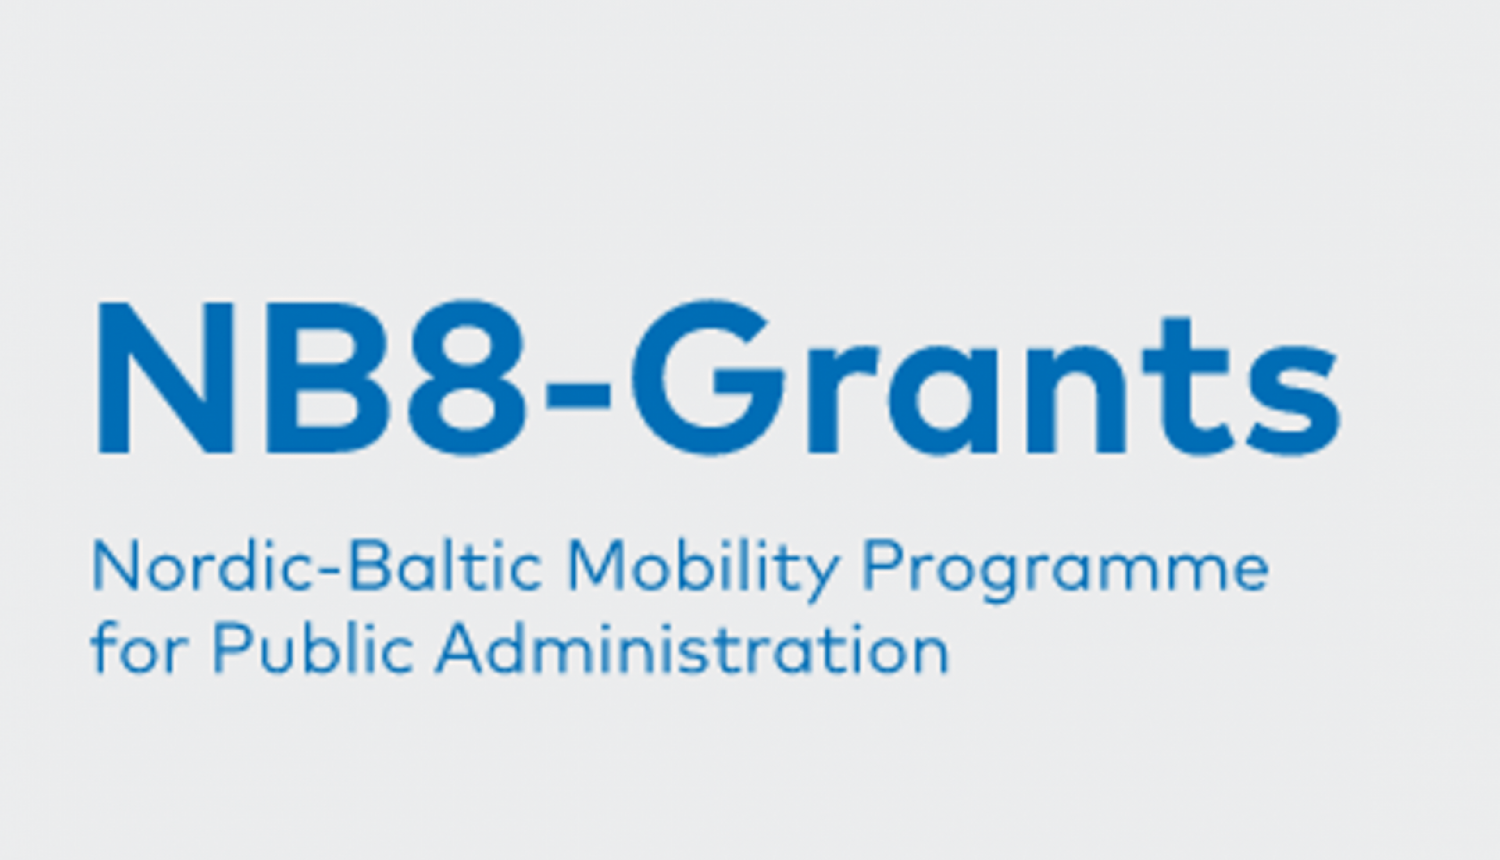 NB8-Grants